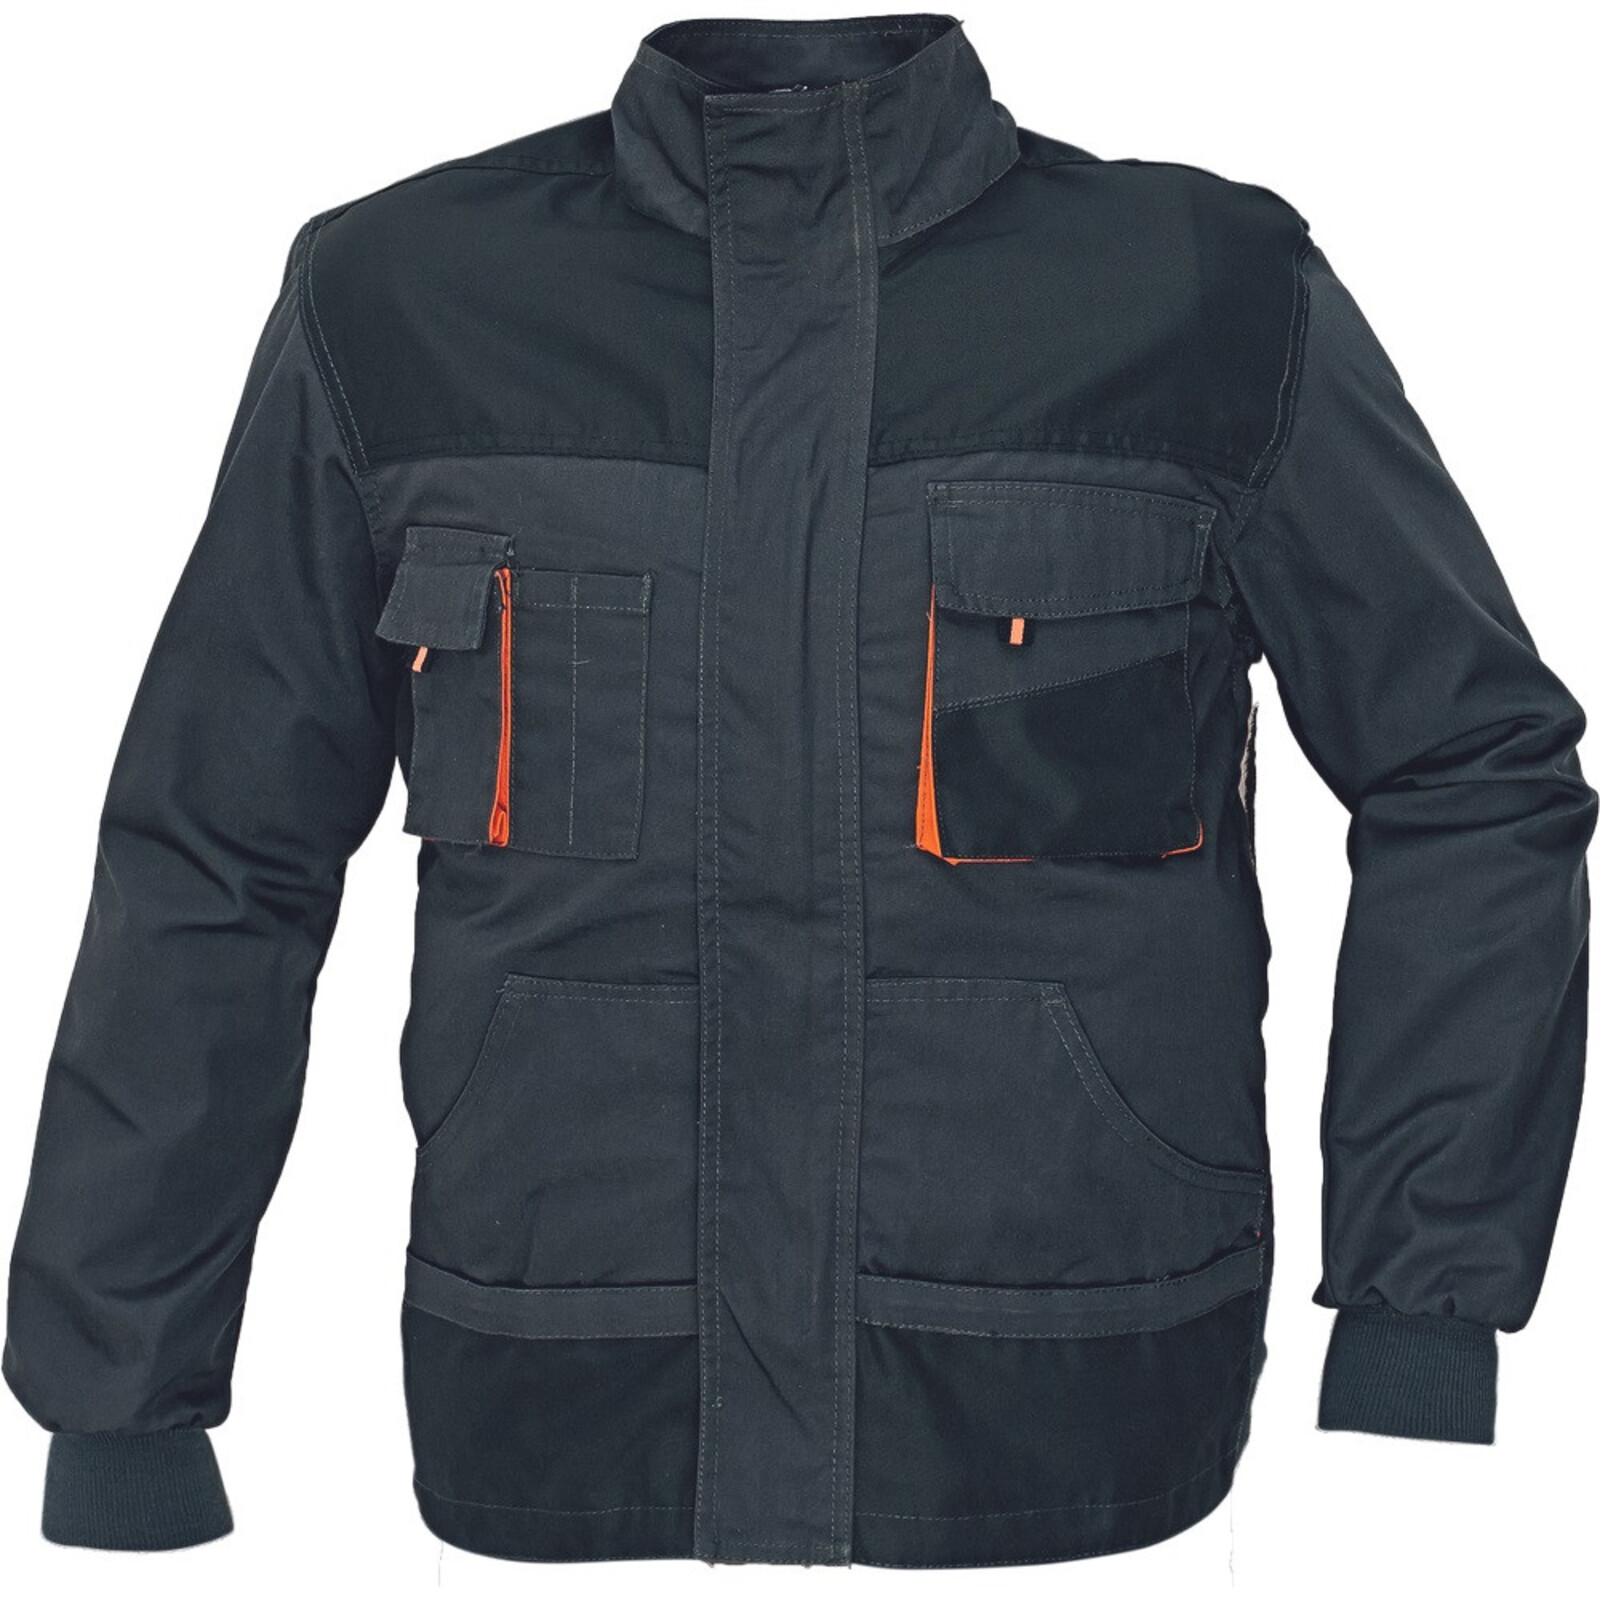 Odolná montérková bunda Emerton pánska - veľkosť: 62, farba: čierna/oranžová